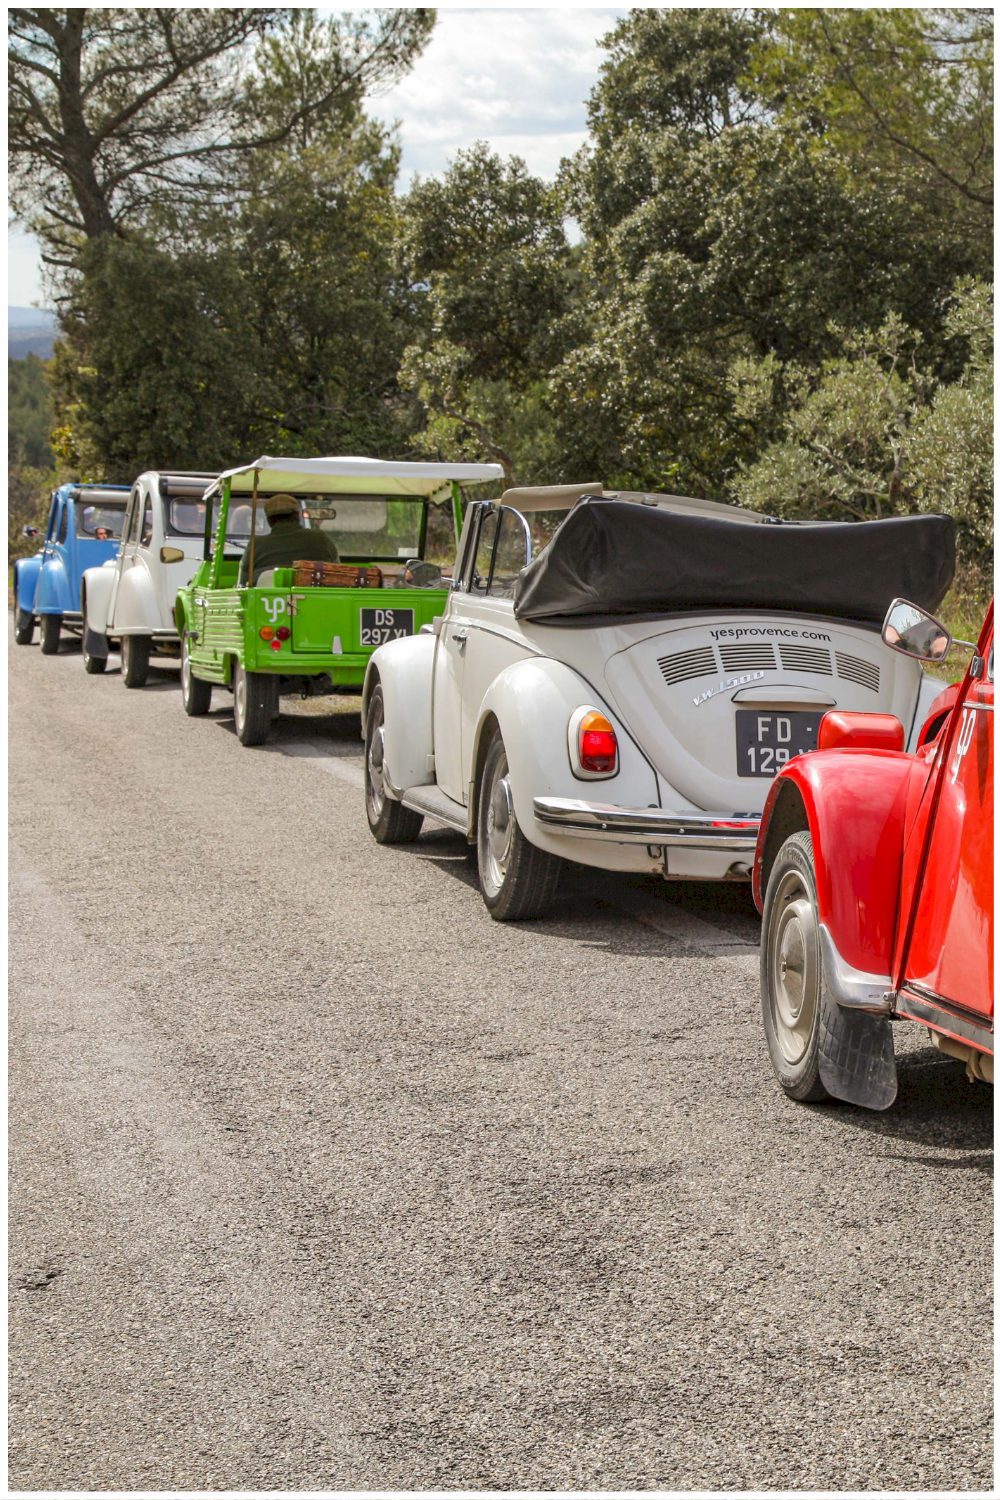 Visiter la Provence en voitures vintage